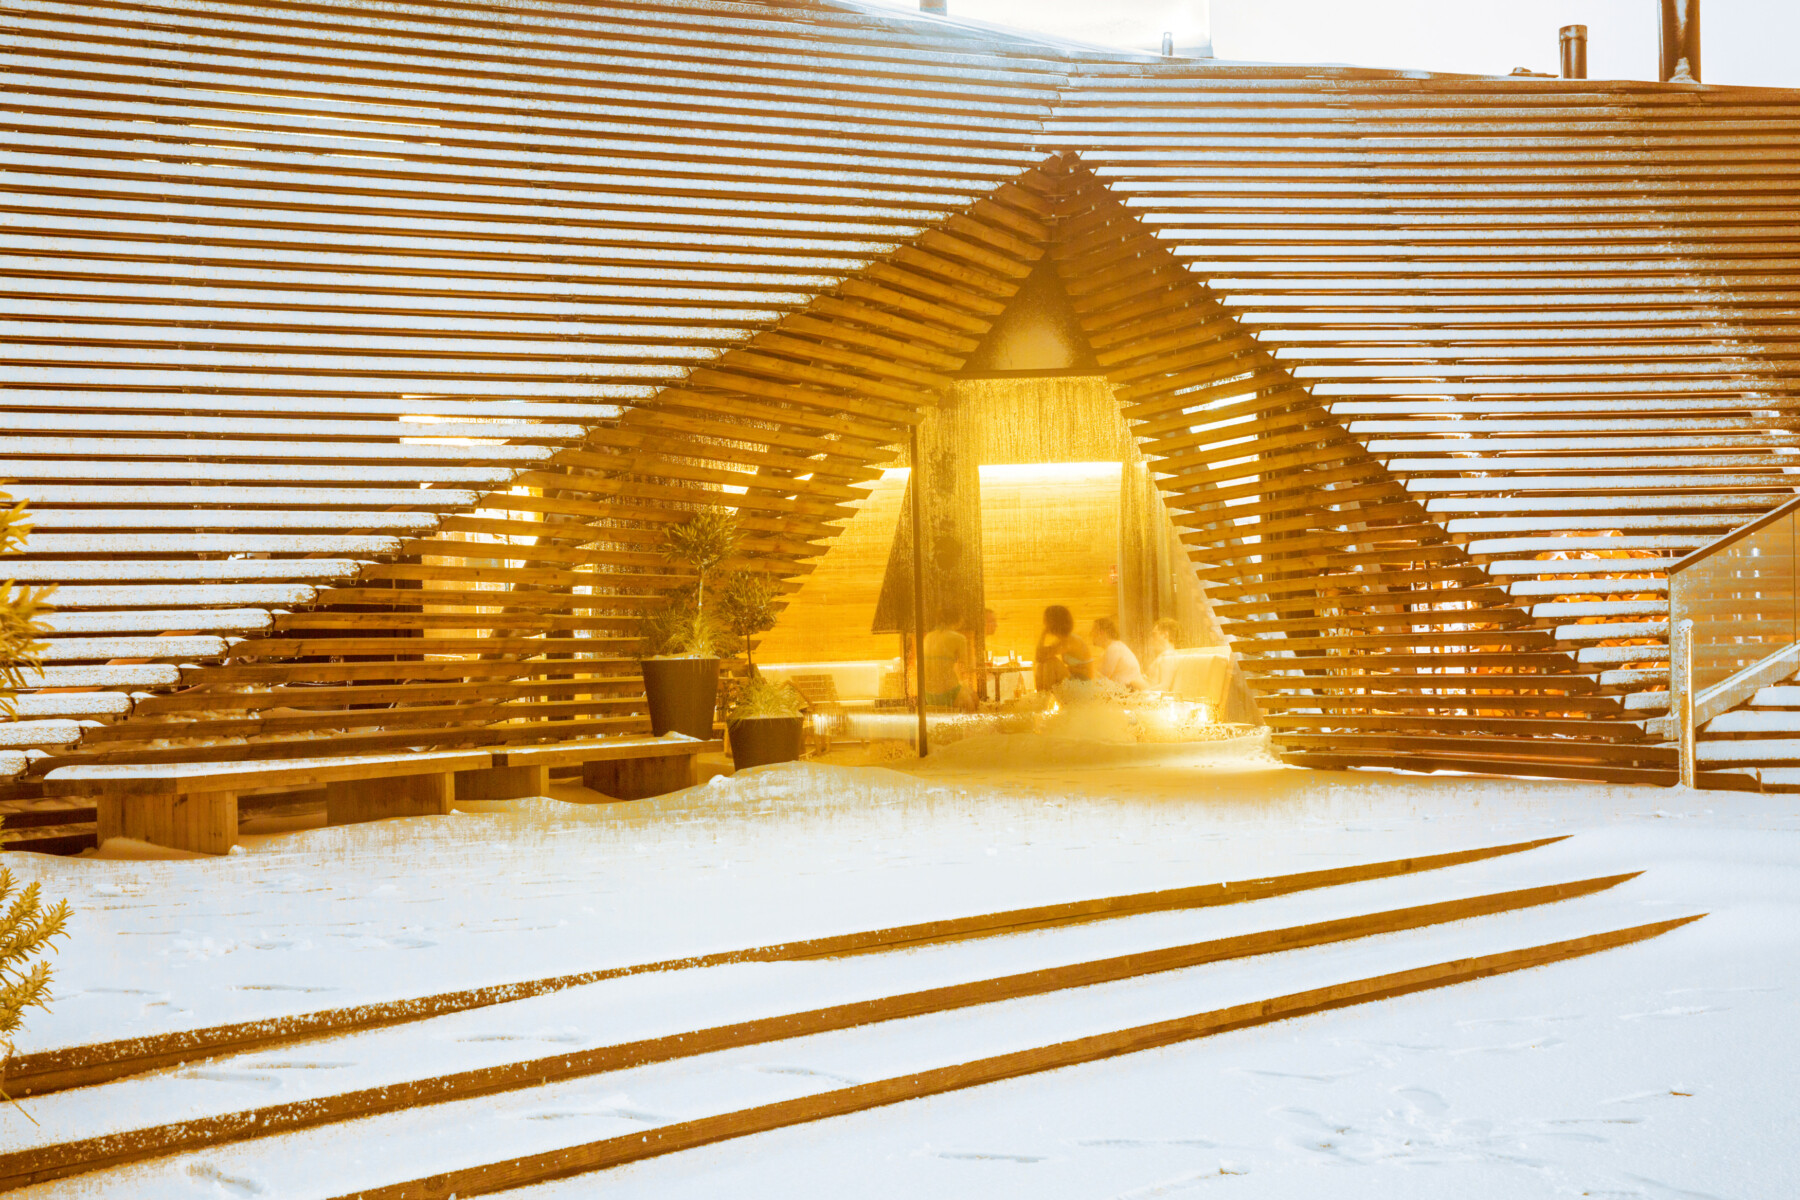 En la imagen, un edificio de madera con un porche triangular cubierto de nieve, mientras que por un gran ventanal se puede ver que hay gente sentada en una acogedora sala en el interior.